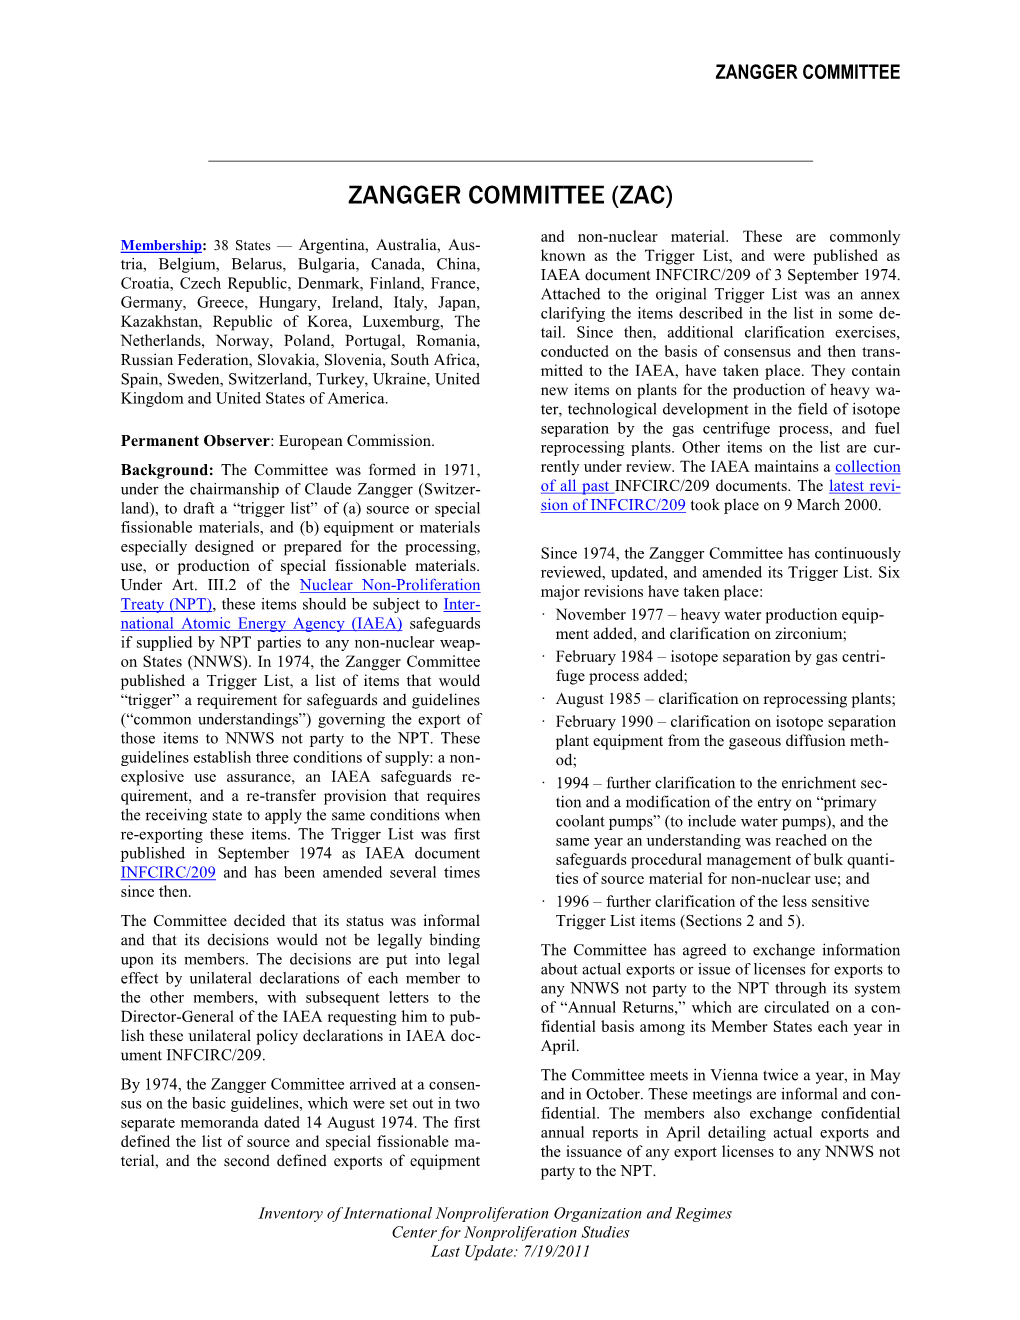 Zangger Committee